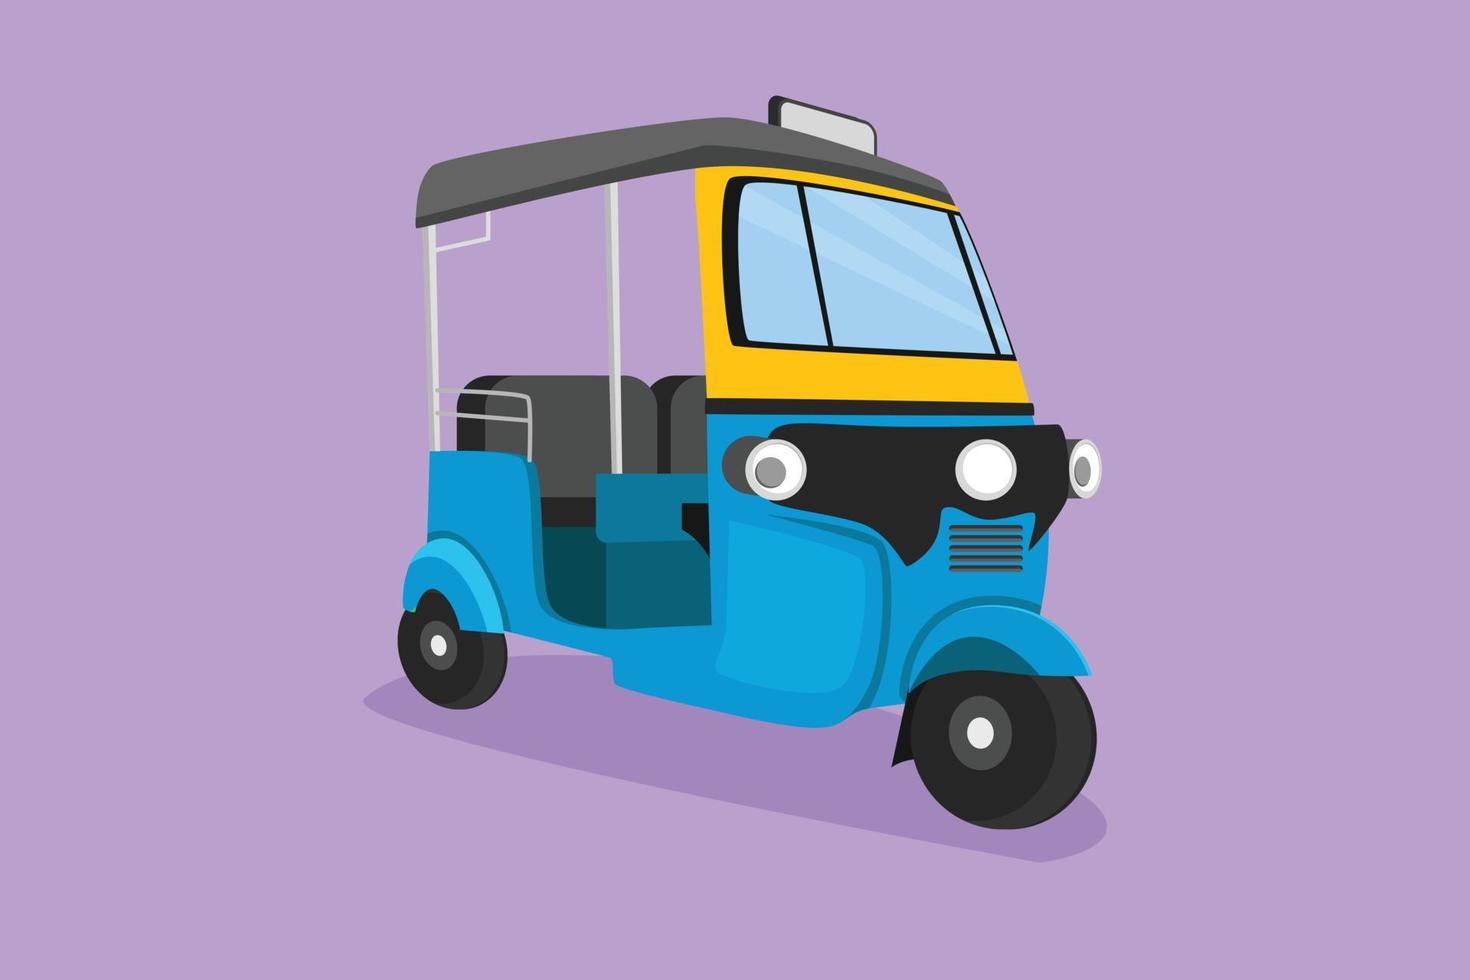 dibujo plano de personajes tuk tuk tailandia a menudo utilizado por los turistas como medio de transporte para moverse por las atracciones turísticas de tailandia. vehículo tradicional en carretera. ilustración vectorial de diseño de dibujos animados vector